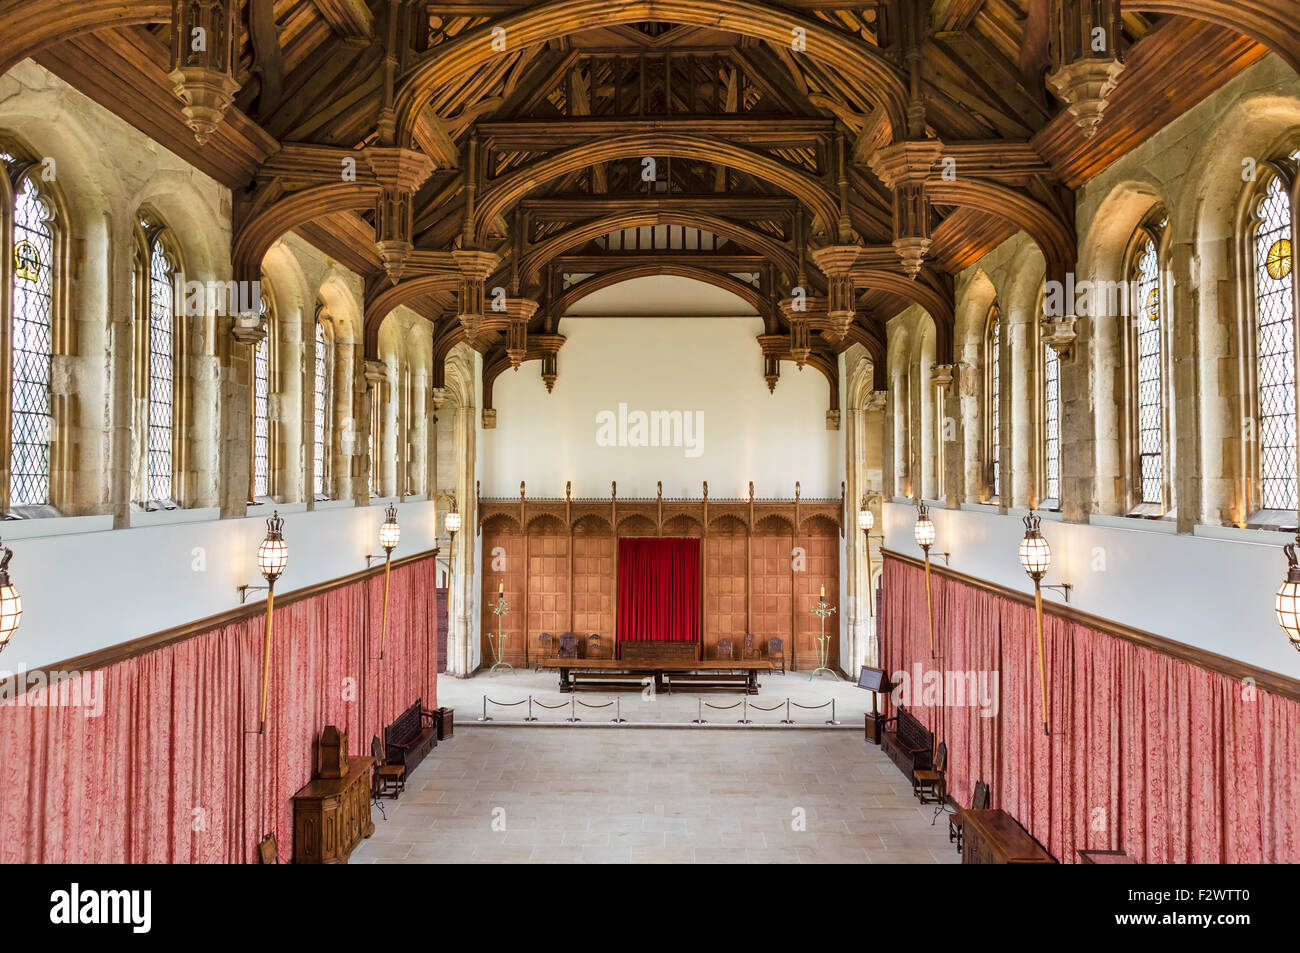 Der Burgsaal 15.Jh. in Eltham Palace, das ehemalige Haus von Stephen Courtauld und Virginia Courtauld, Eltham, London, England, UK Stockfoto